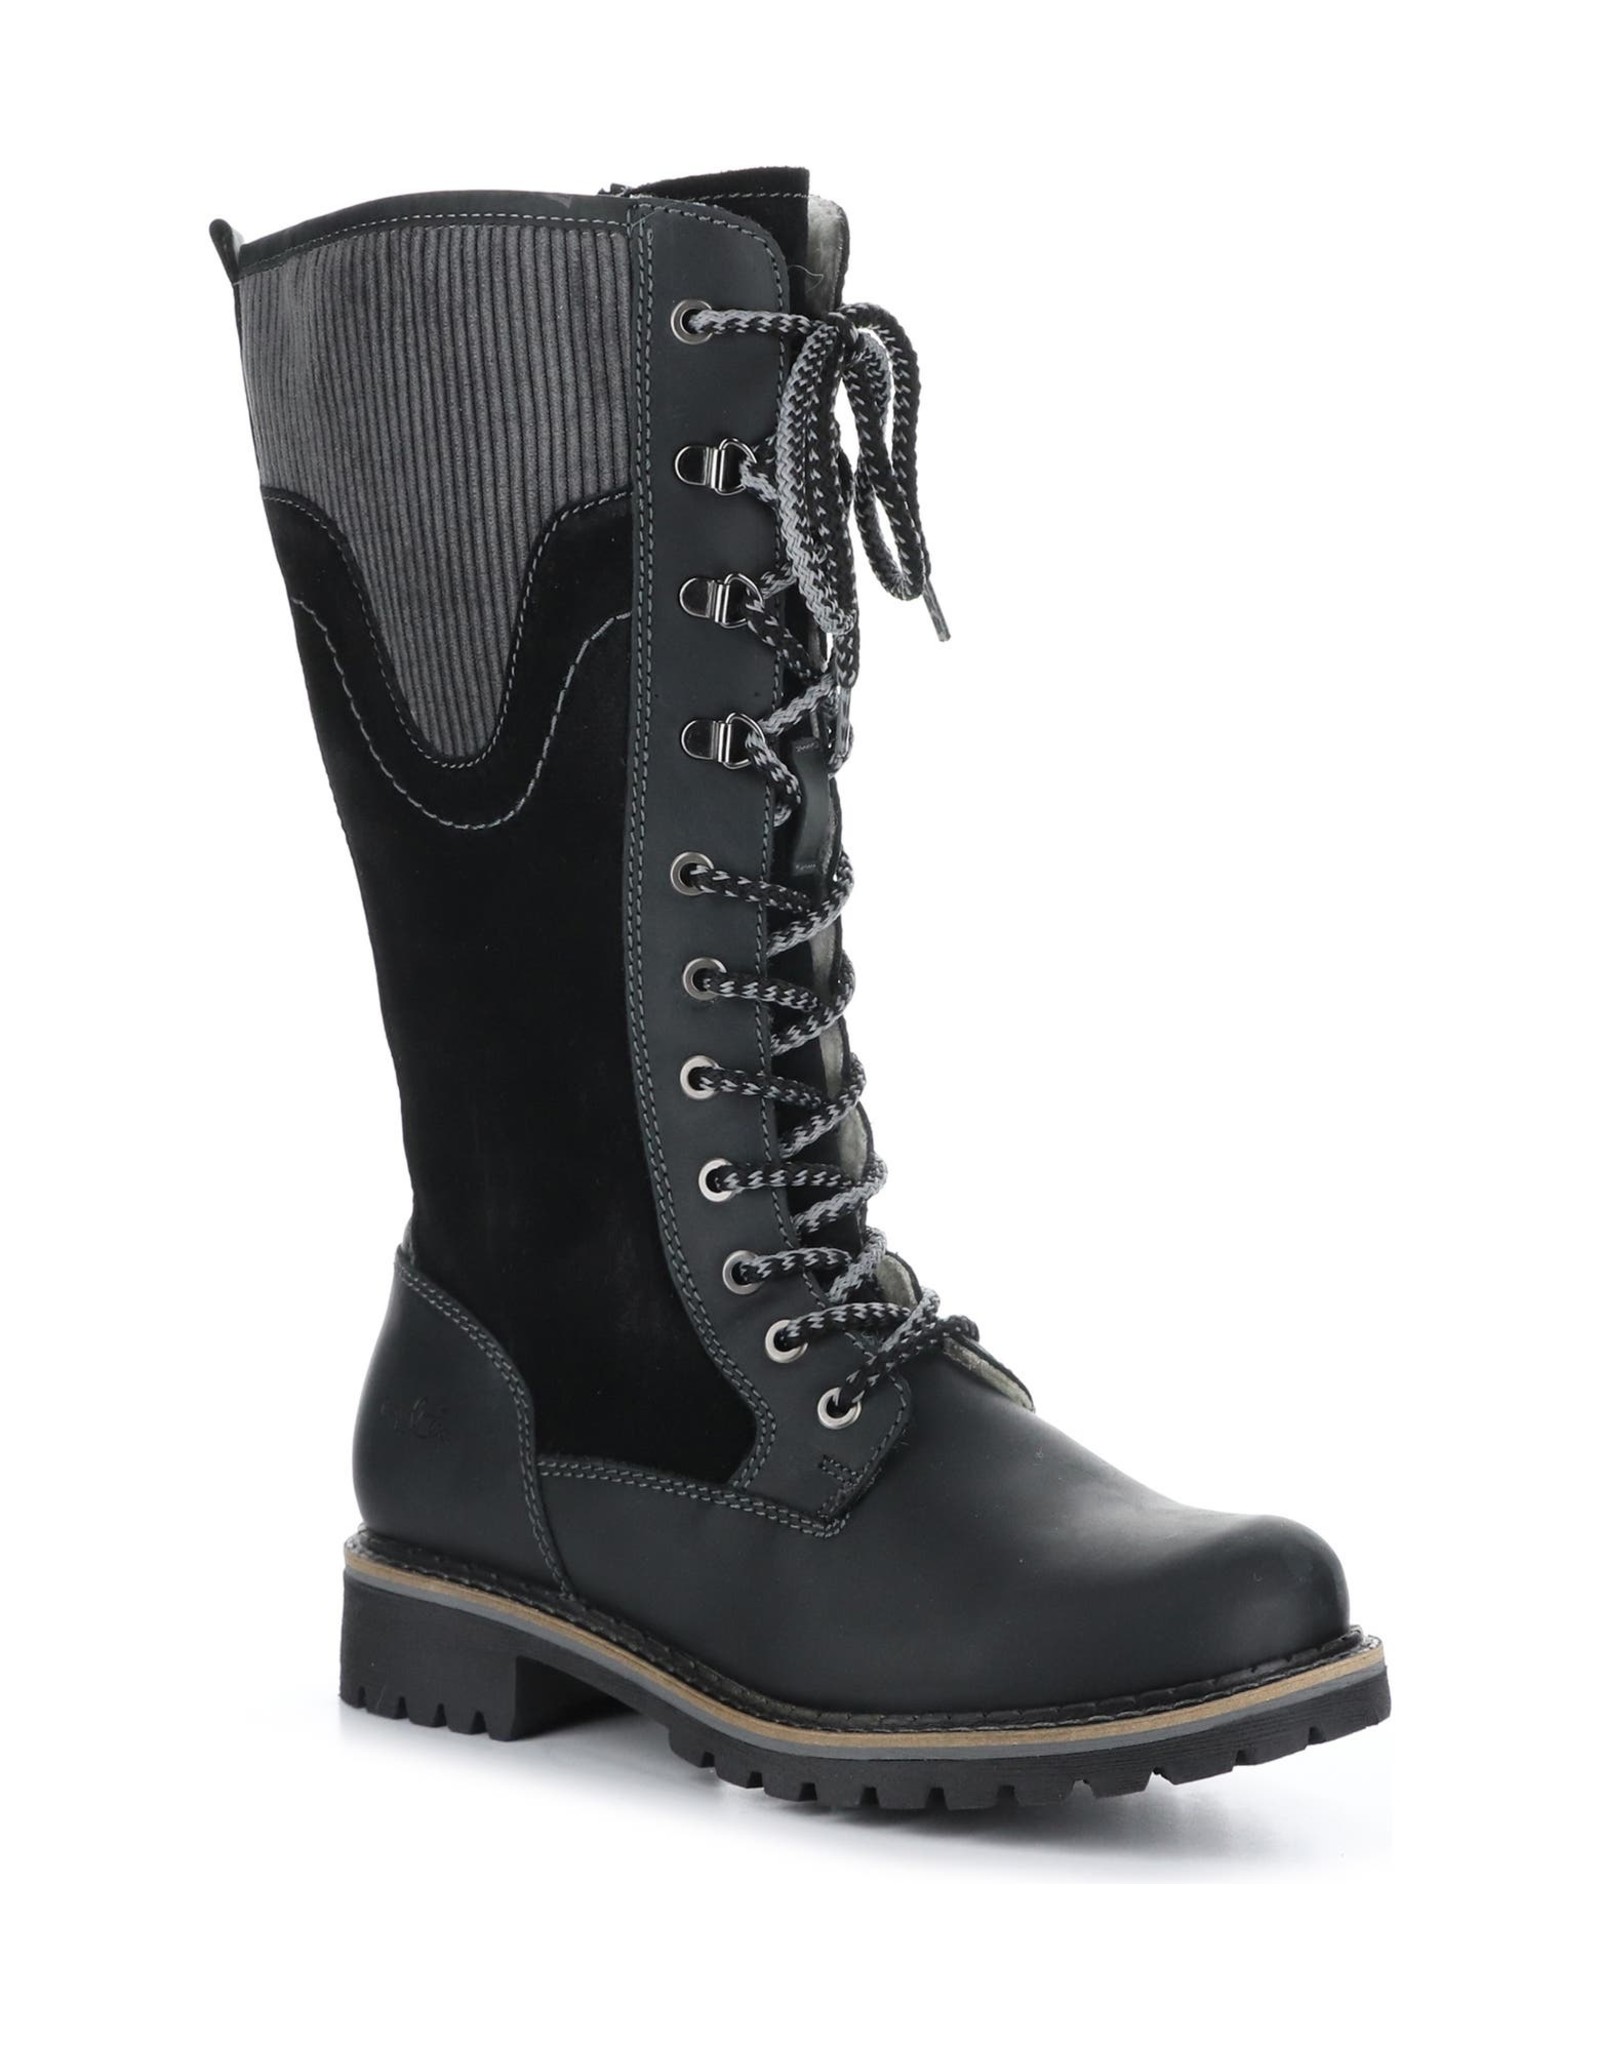 Bos & Co Bos & Co - Harrison waterproof boot (black)